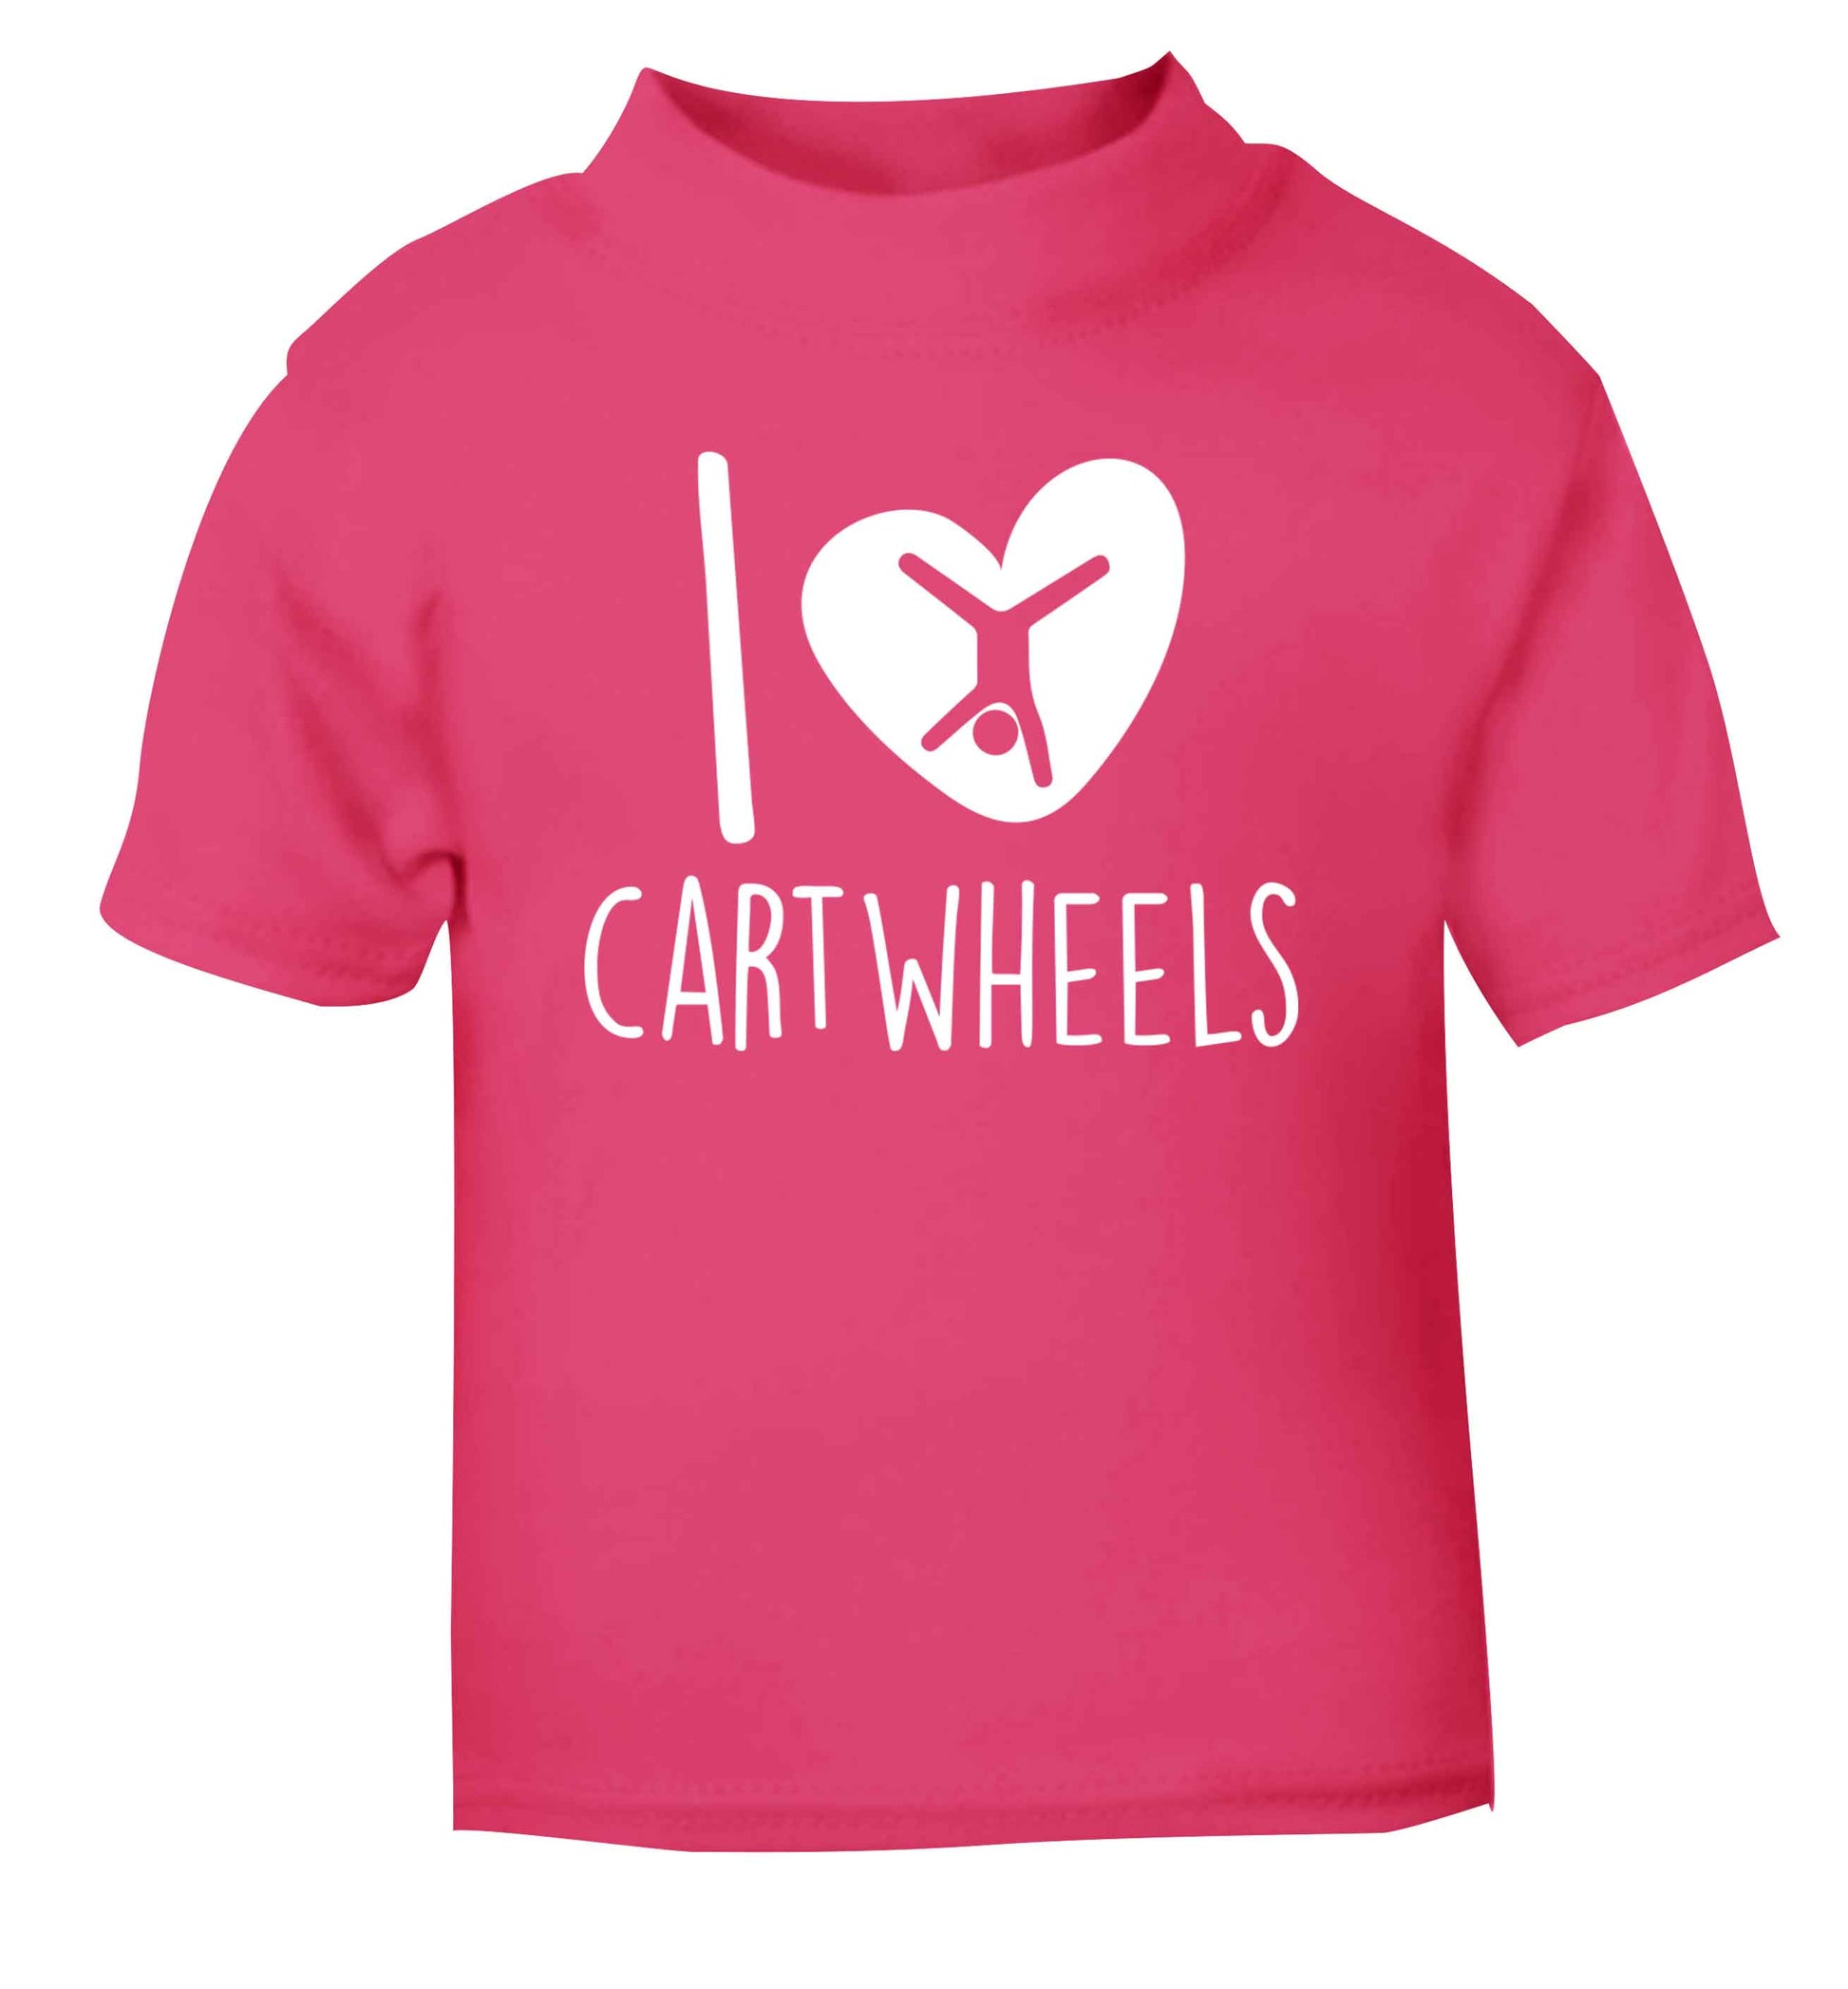 I love cartwheels pink Baby Toddler Tshirt 2 Years